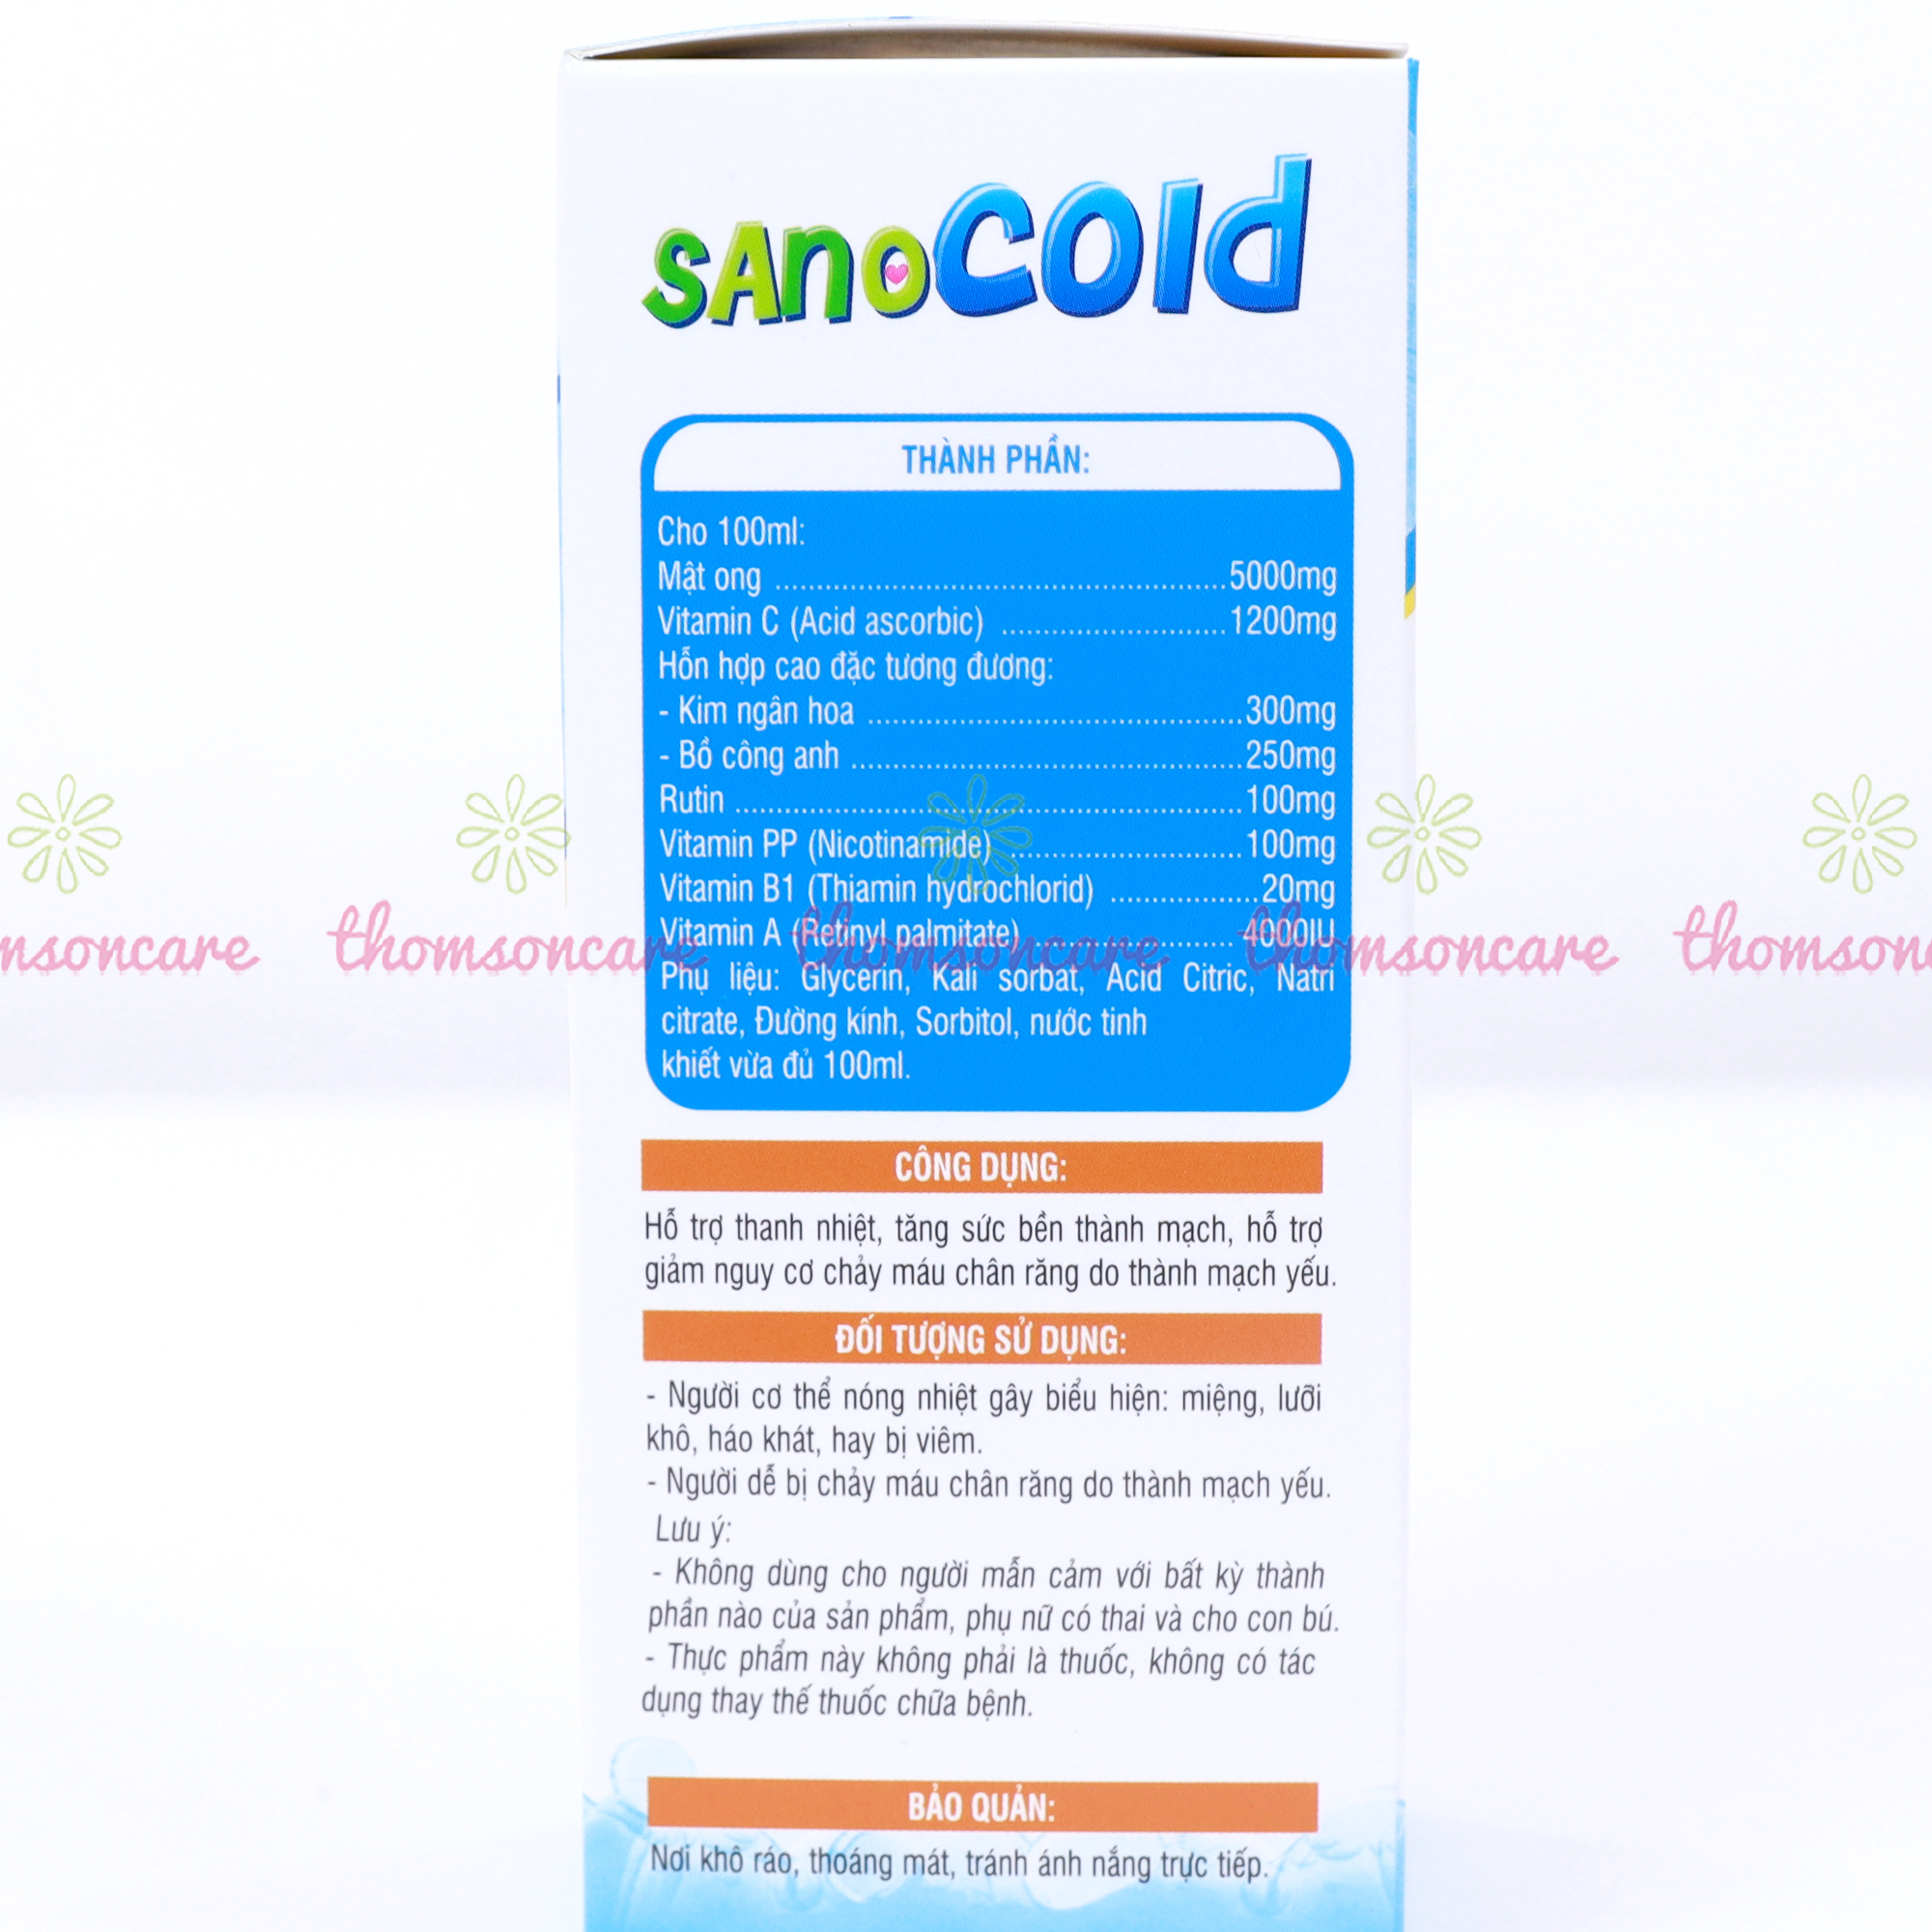 Siro thanh nhiệt cho bé Sano Cold - giúp giảm nhiệt miệng, nóng trong, chảy máu chân răng từ thảo dược - Chai 100ml Thomsoncare